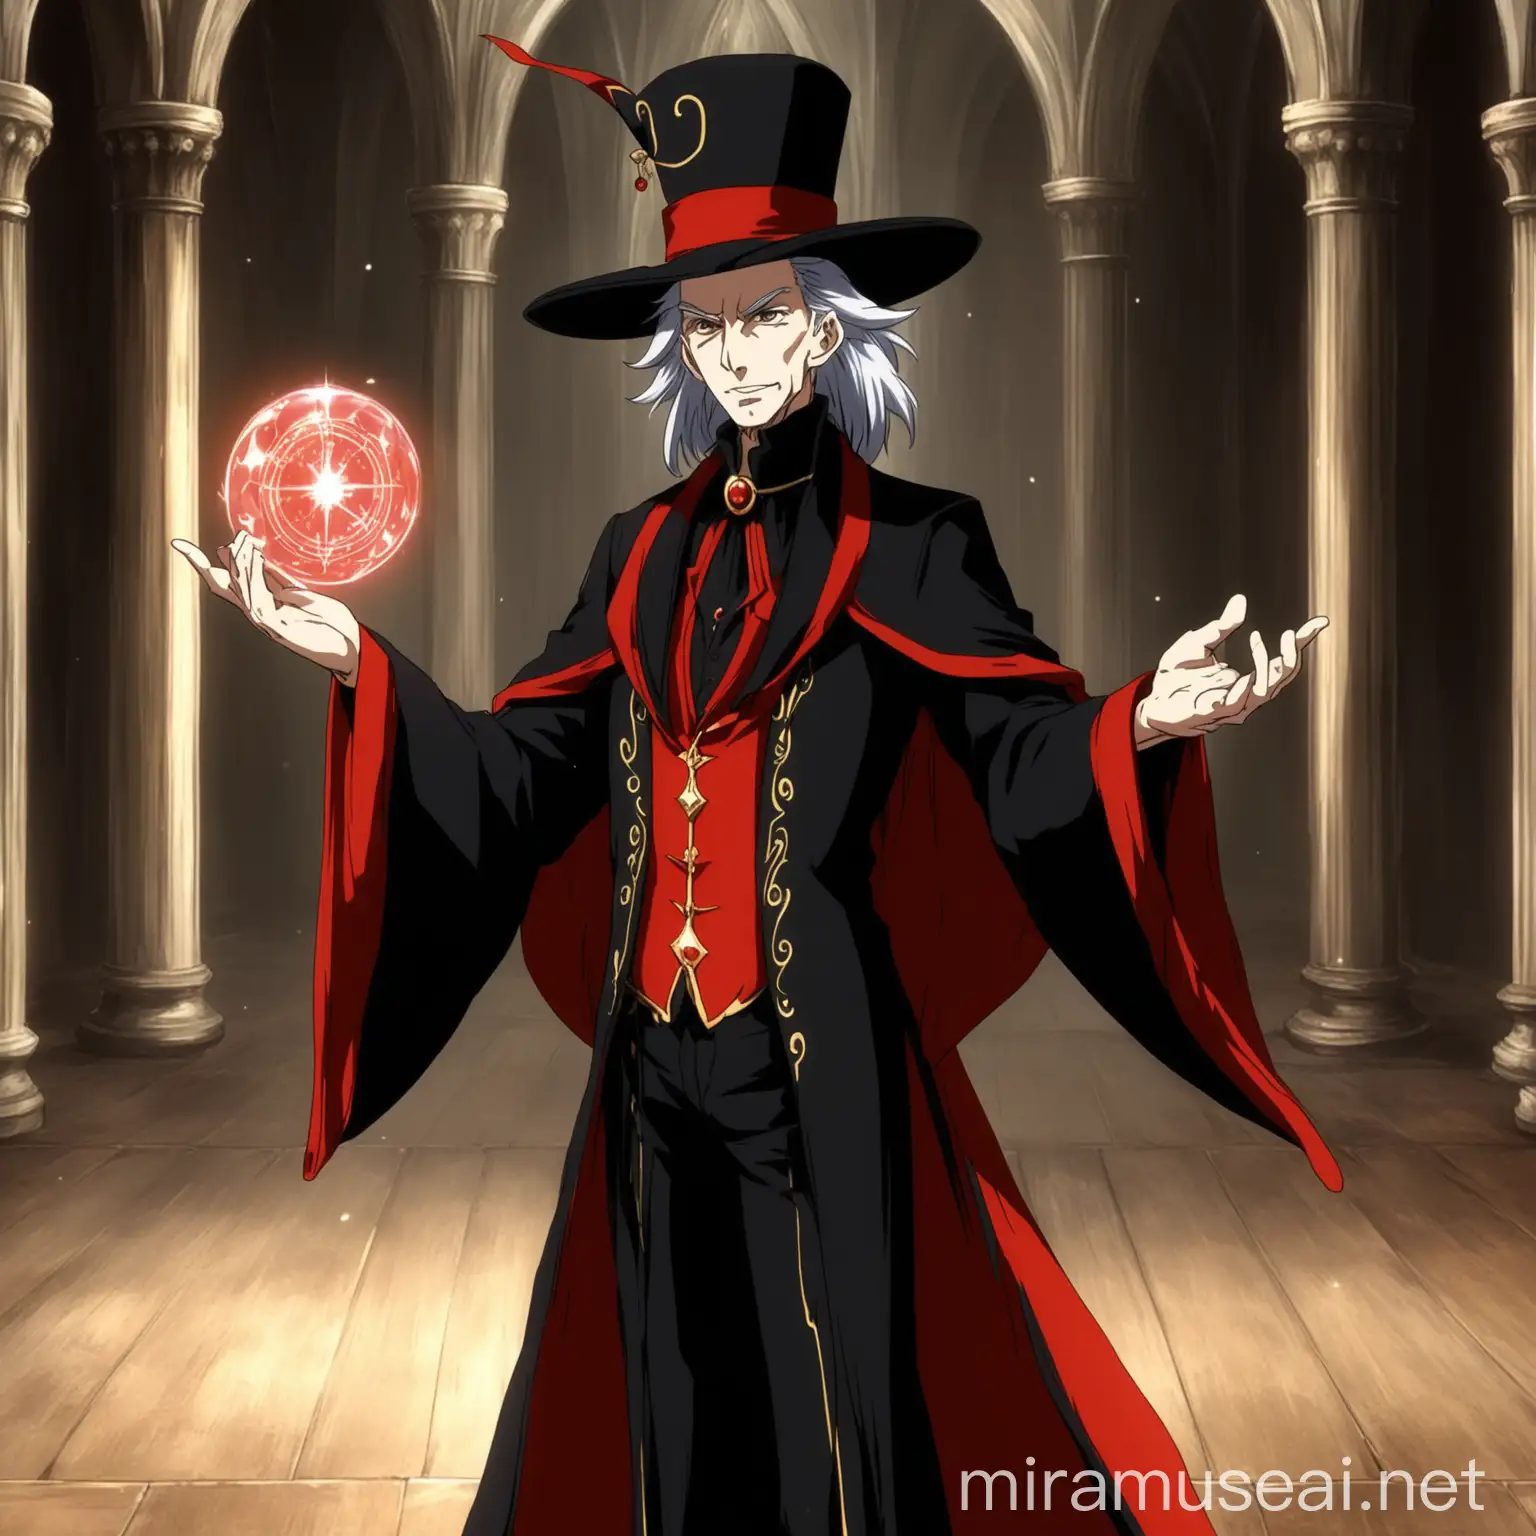 Elderly Court Magician in Anime Fantasy Attire